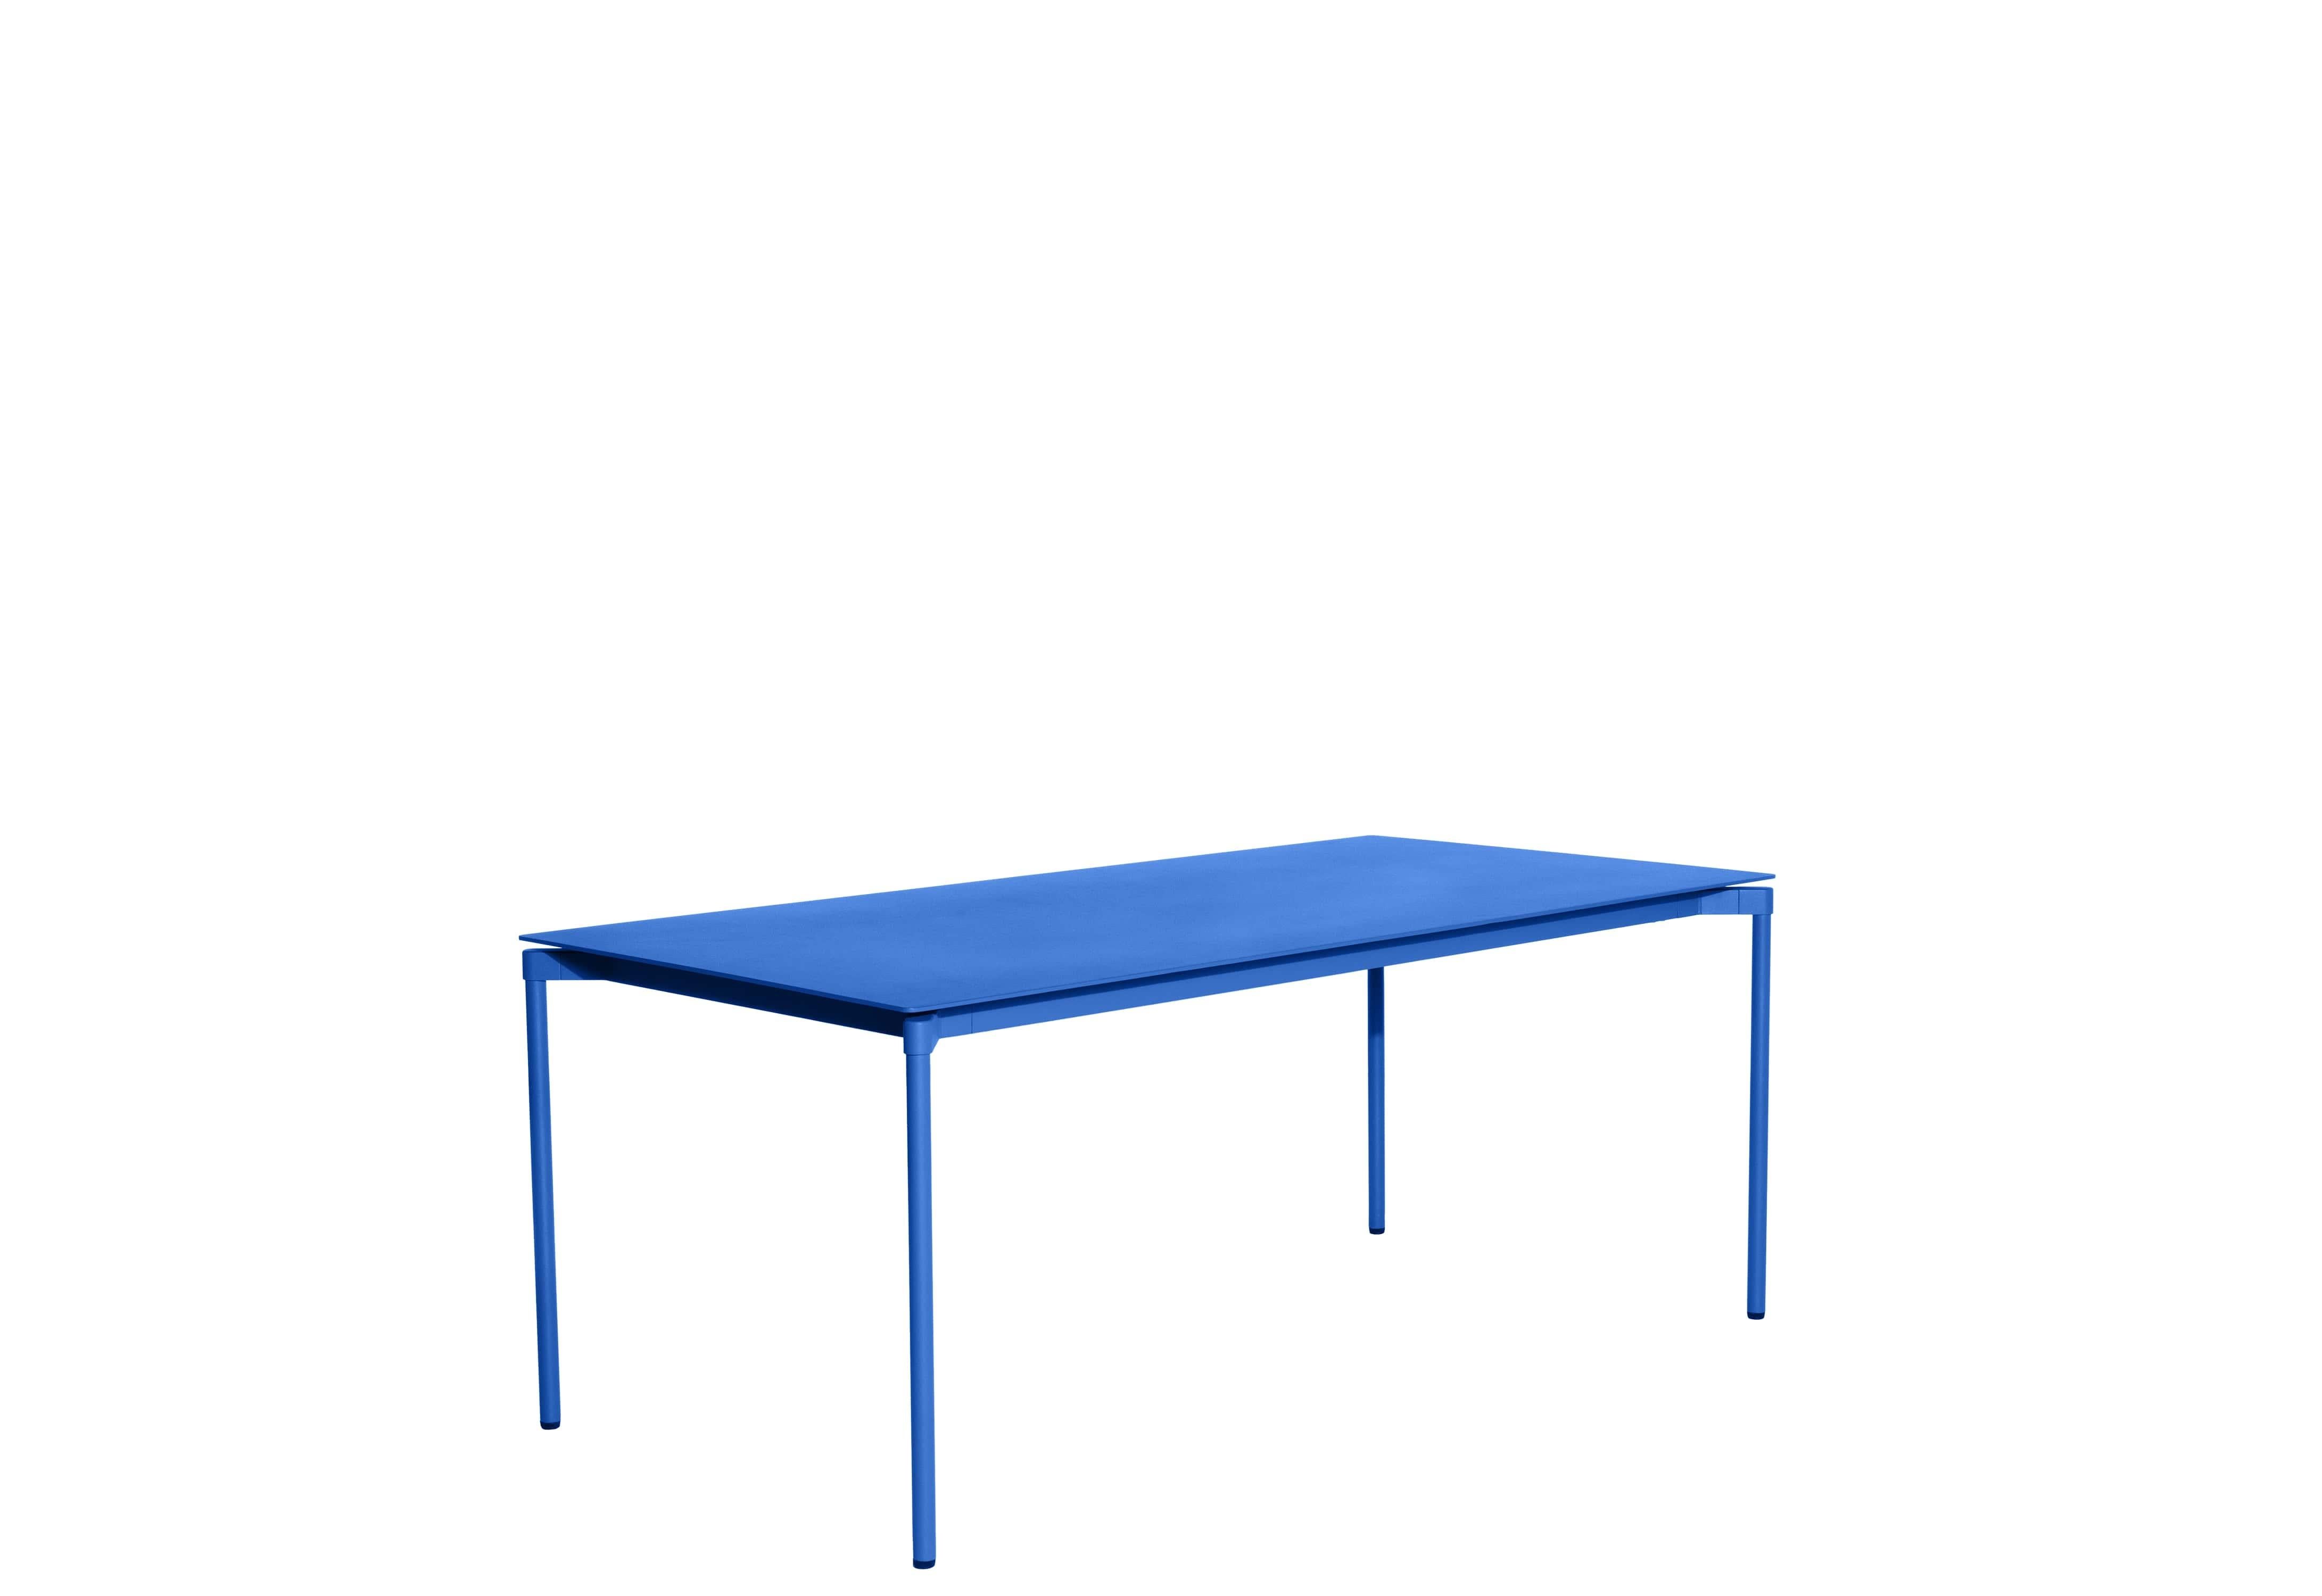 Petite Friture Fromme Table rectangulaire en aluminium bleu par Tom Chung, 2020

La collection S/One se distingue par sa ligne épurée et son design compact. Les absorbeurs placés sous les sièges leur confèrent une flexibilité souple et très